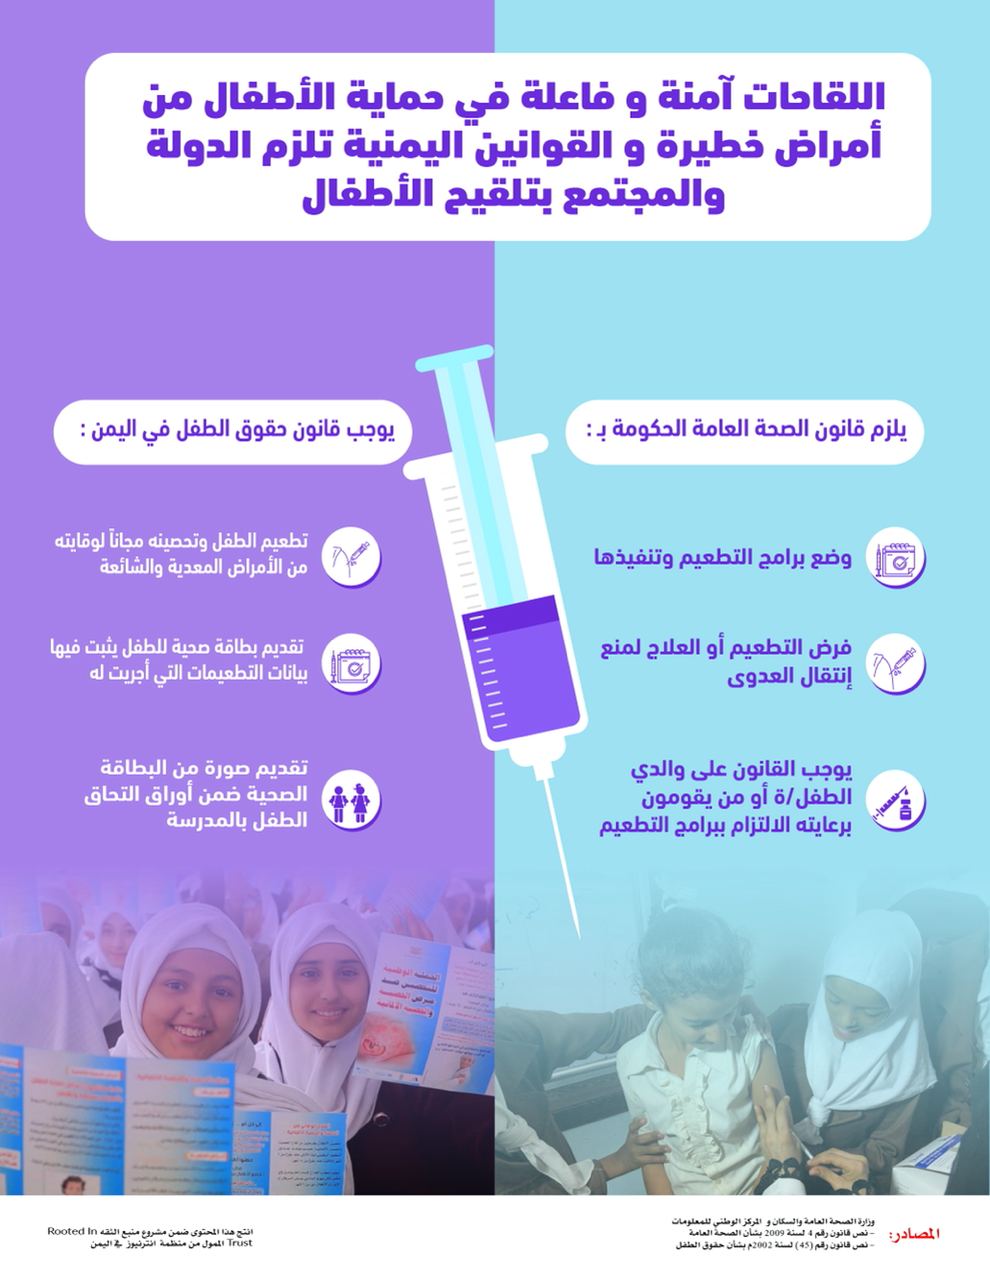 اللقاحات آمنة وفاعلة في حماية الأطفال من أمراض خطيرة